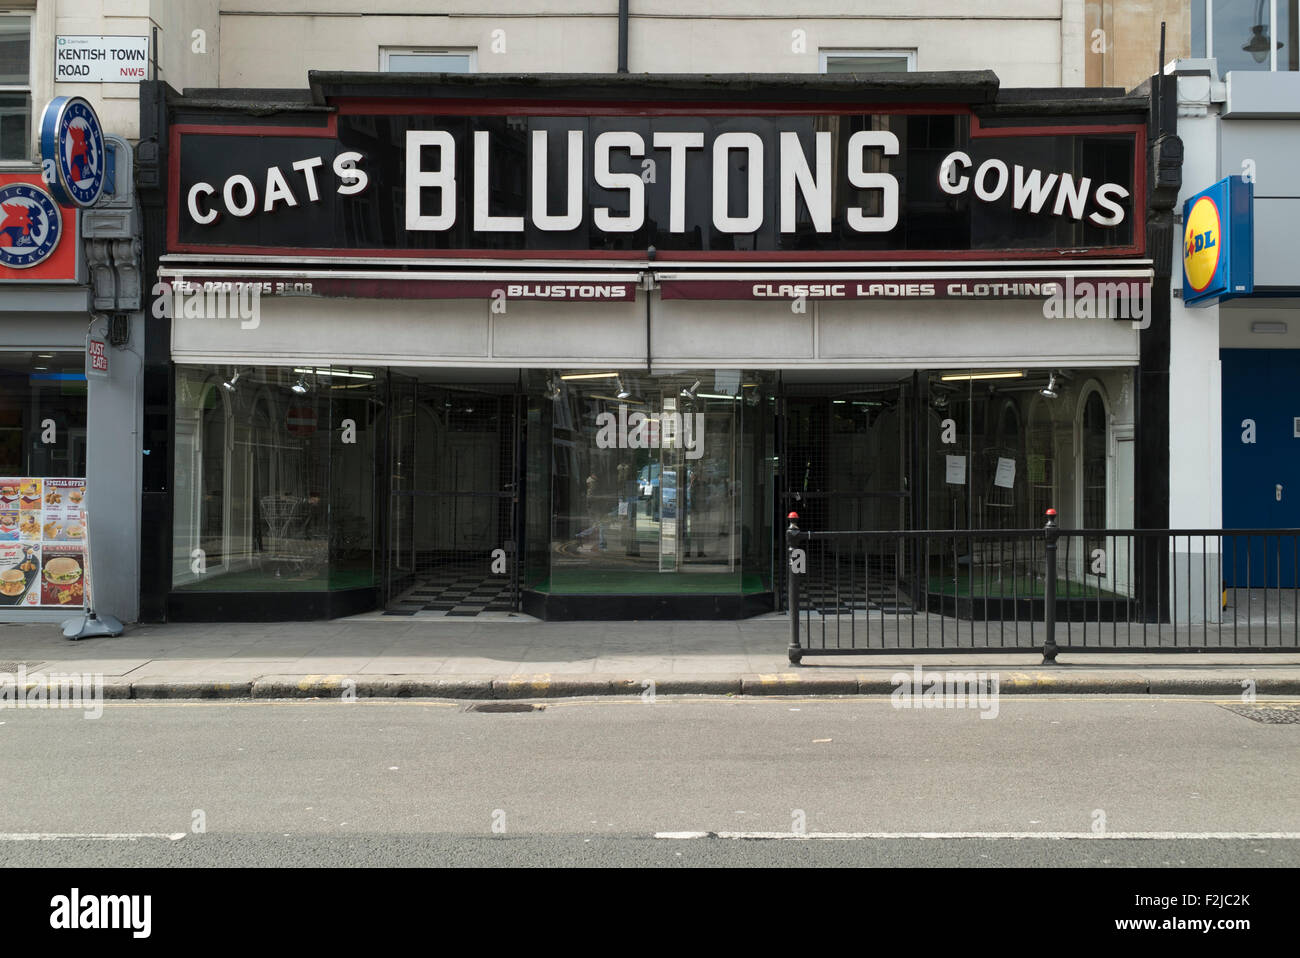 Blustons Geschäft für Damenbekleidung in Kentish Town London aufgeführt Fassade Stockfoto